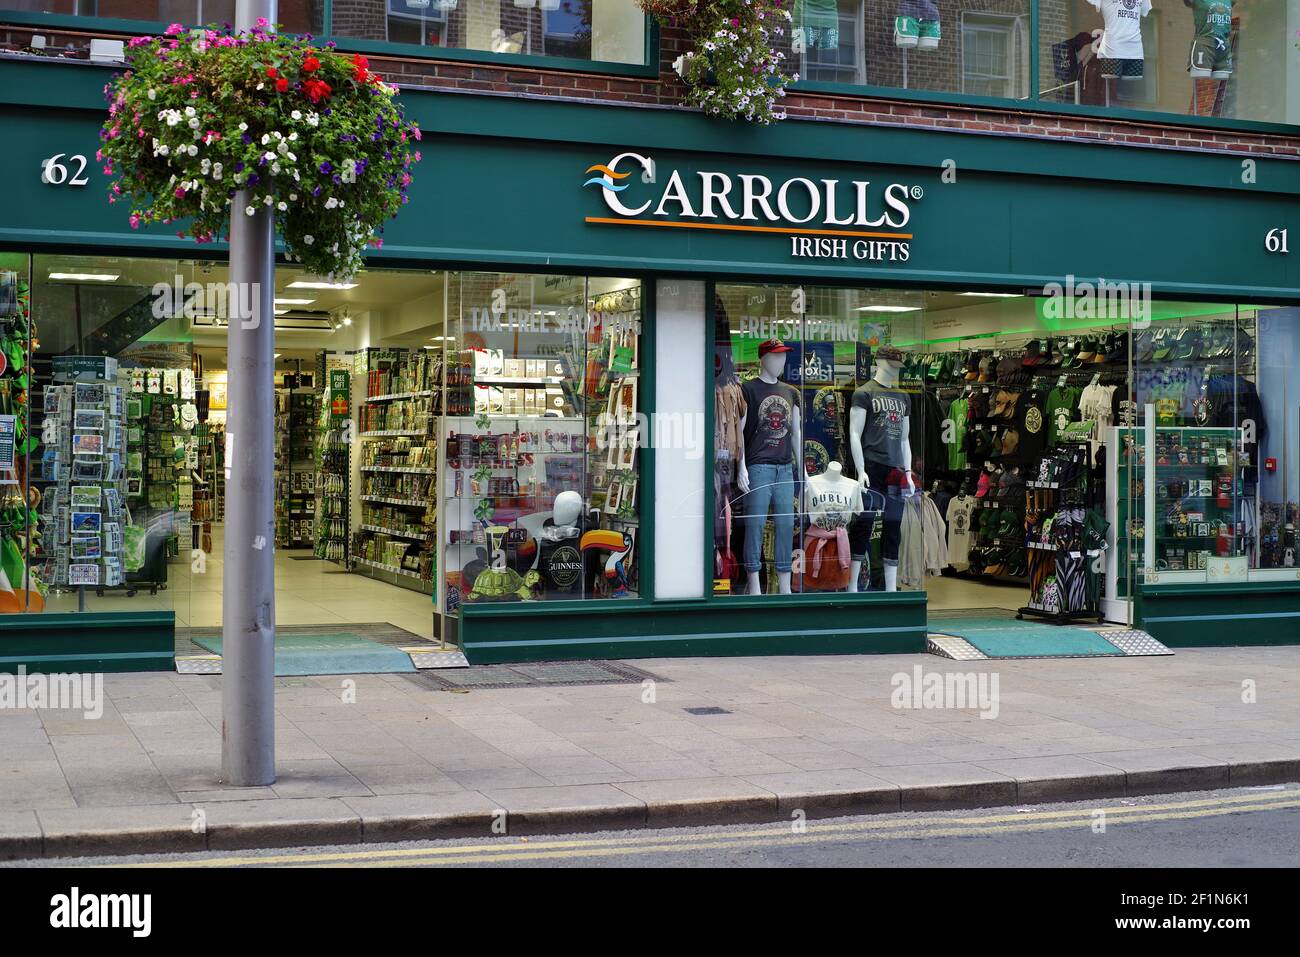 Irish Clothing, Quality Irish Brands, Carrolls Irish Gifts